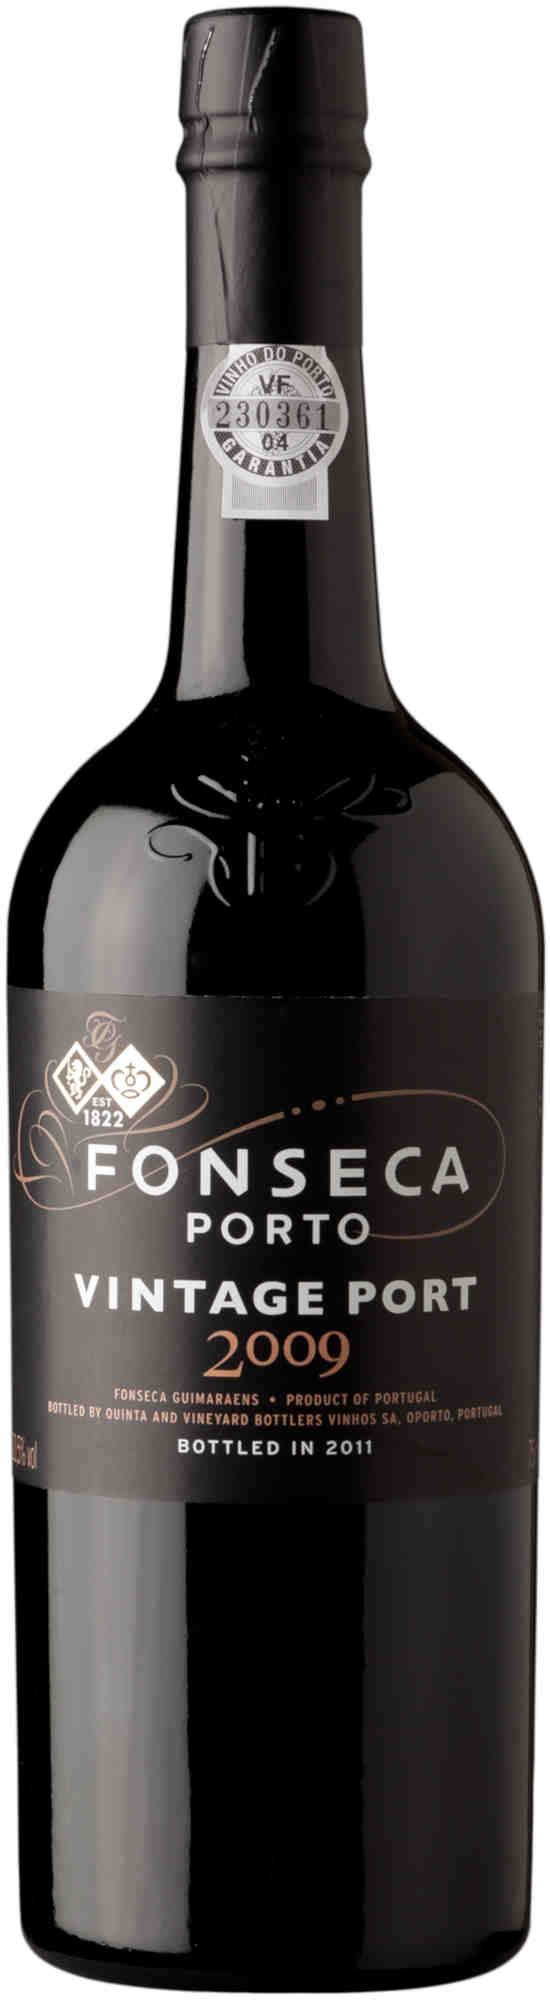 Fonseca-Vintage-Port-2009